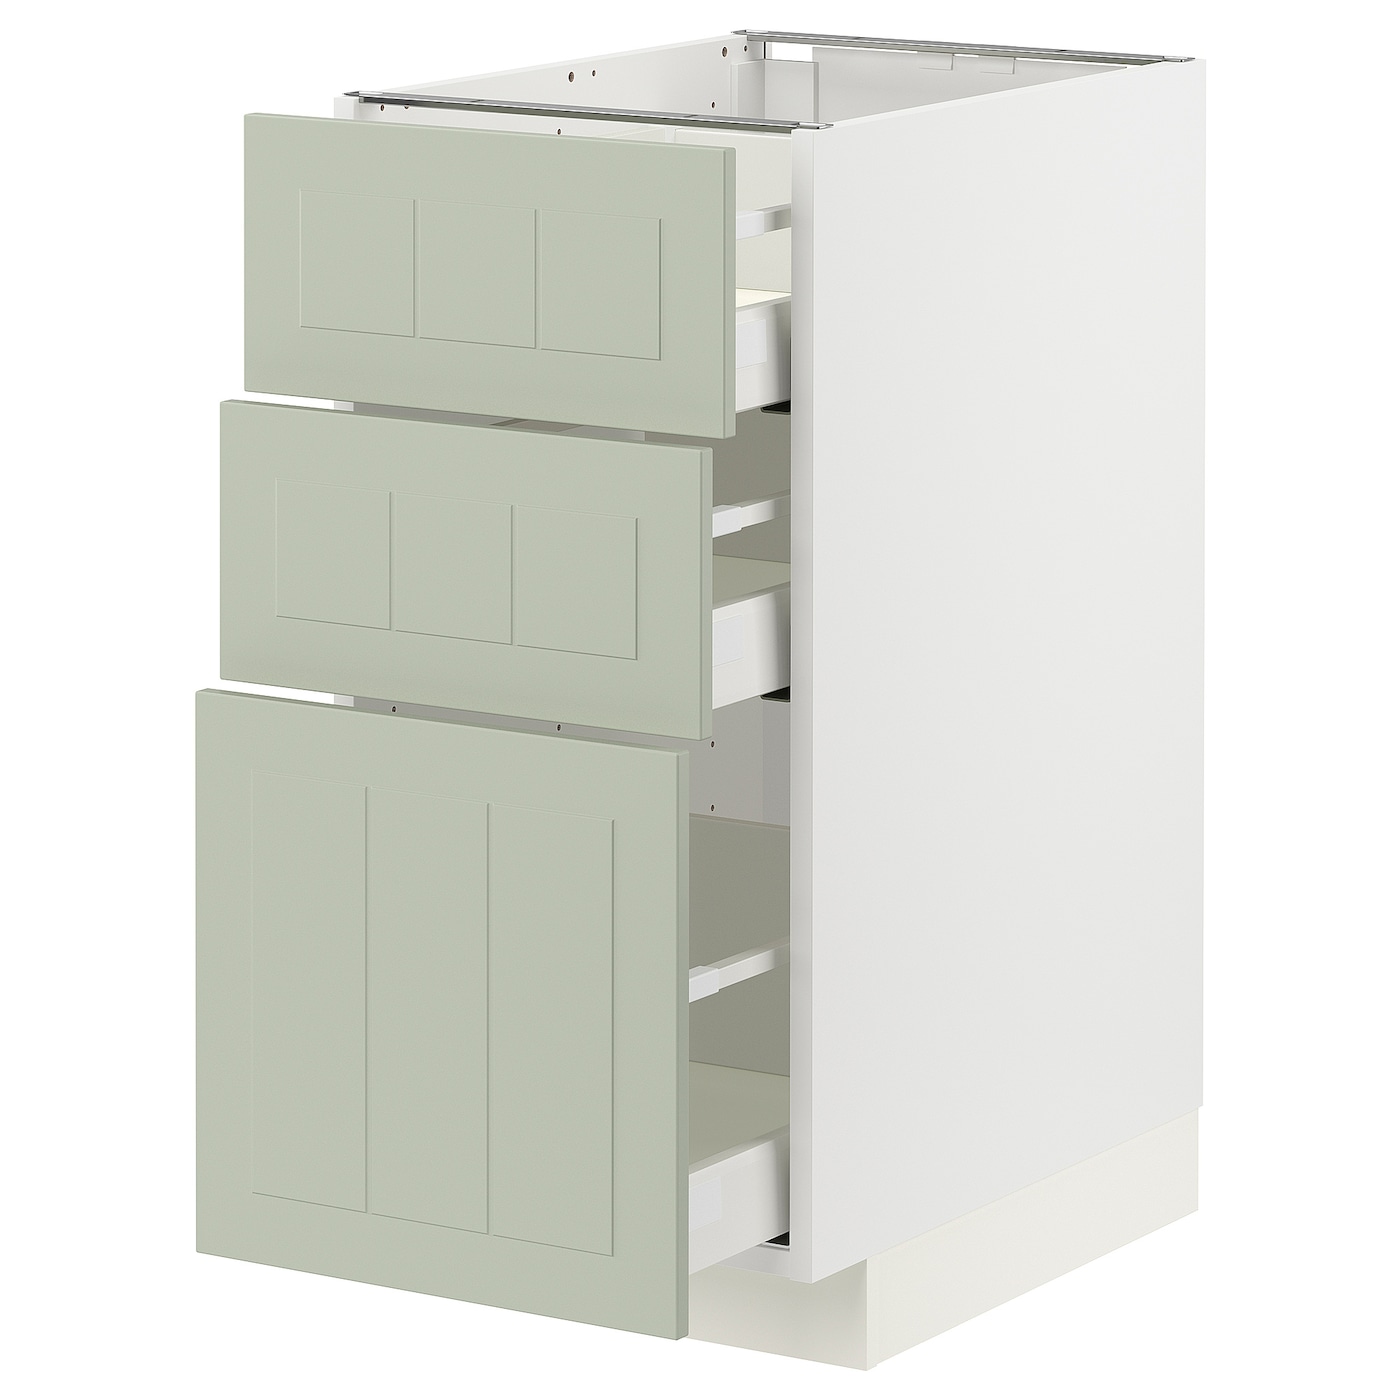 Напольный шкаф - METOD / MAXIMERA IKEA/ МЕТОД/ МАКСИМЕРА ИКЕА,  88х40 см, белый/светло-зеленый